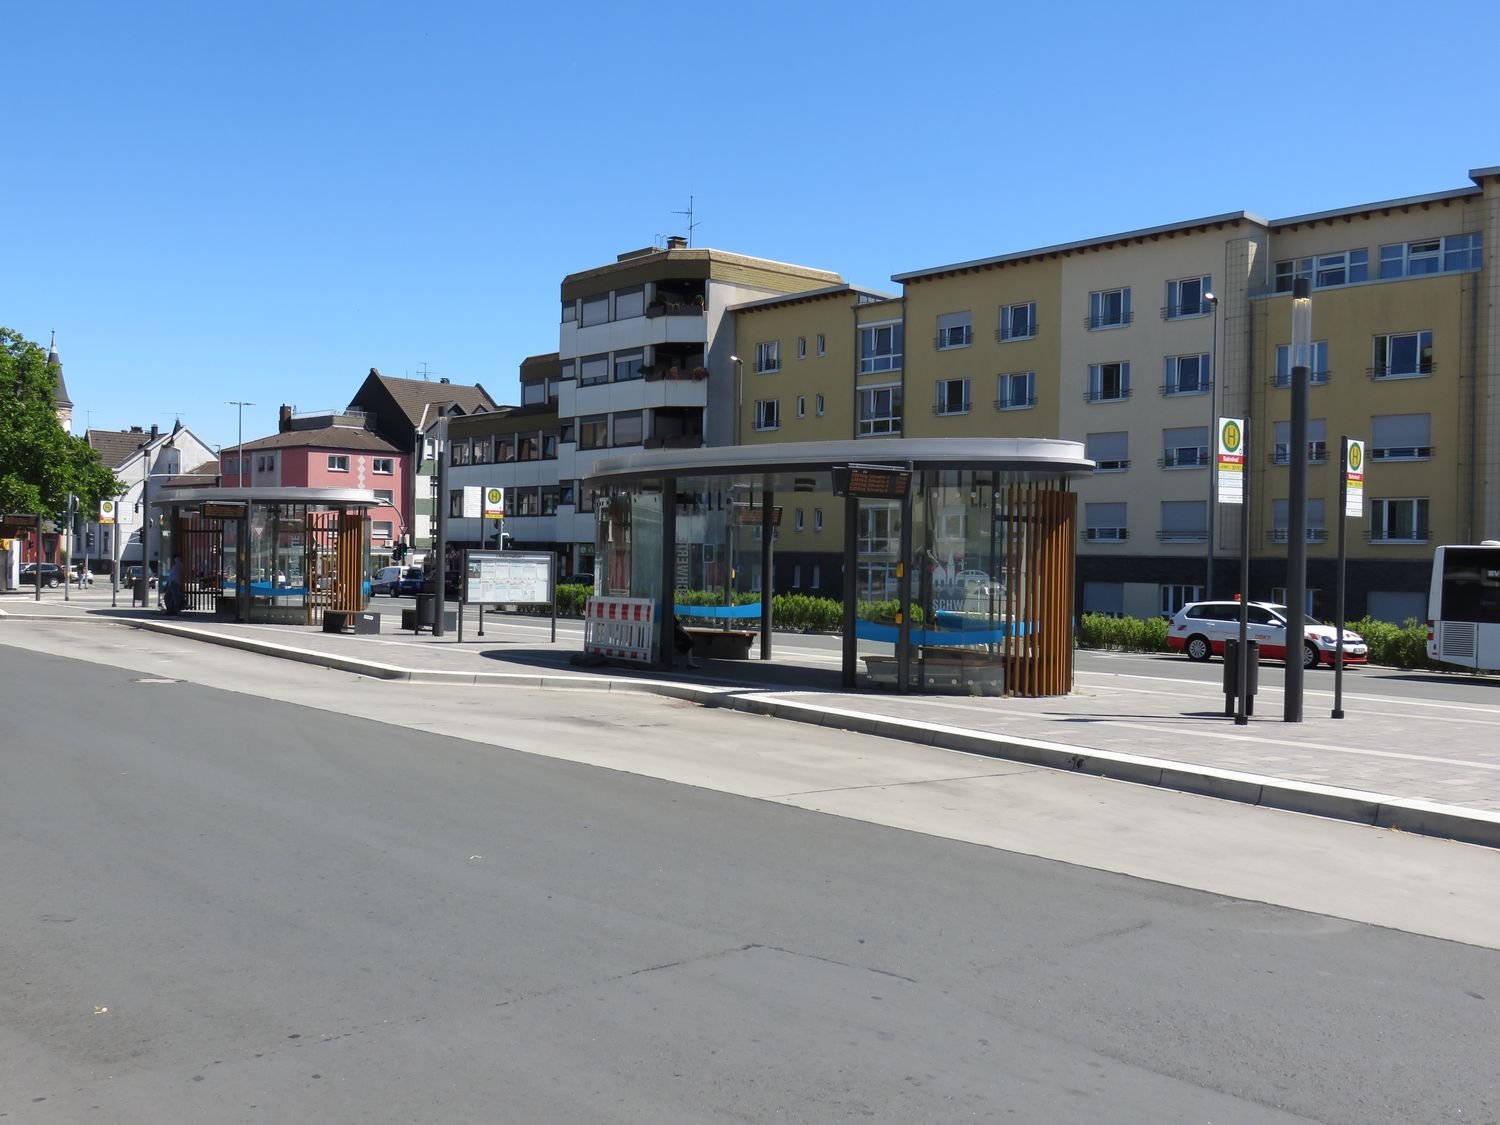 ZOB Schwerte (Busbahnhof) - 2 Fotos - Schwerte - Margot-Röttger-Rath-Straße  | golocal